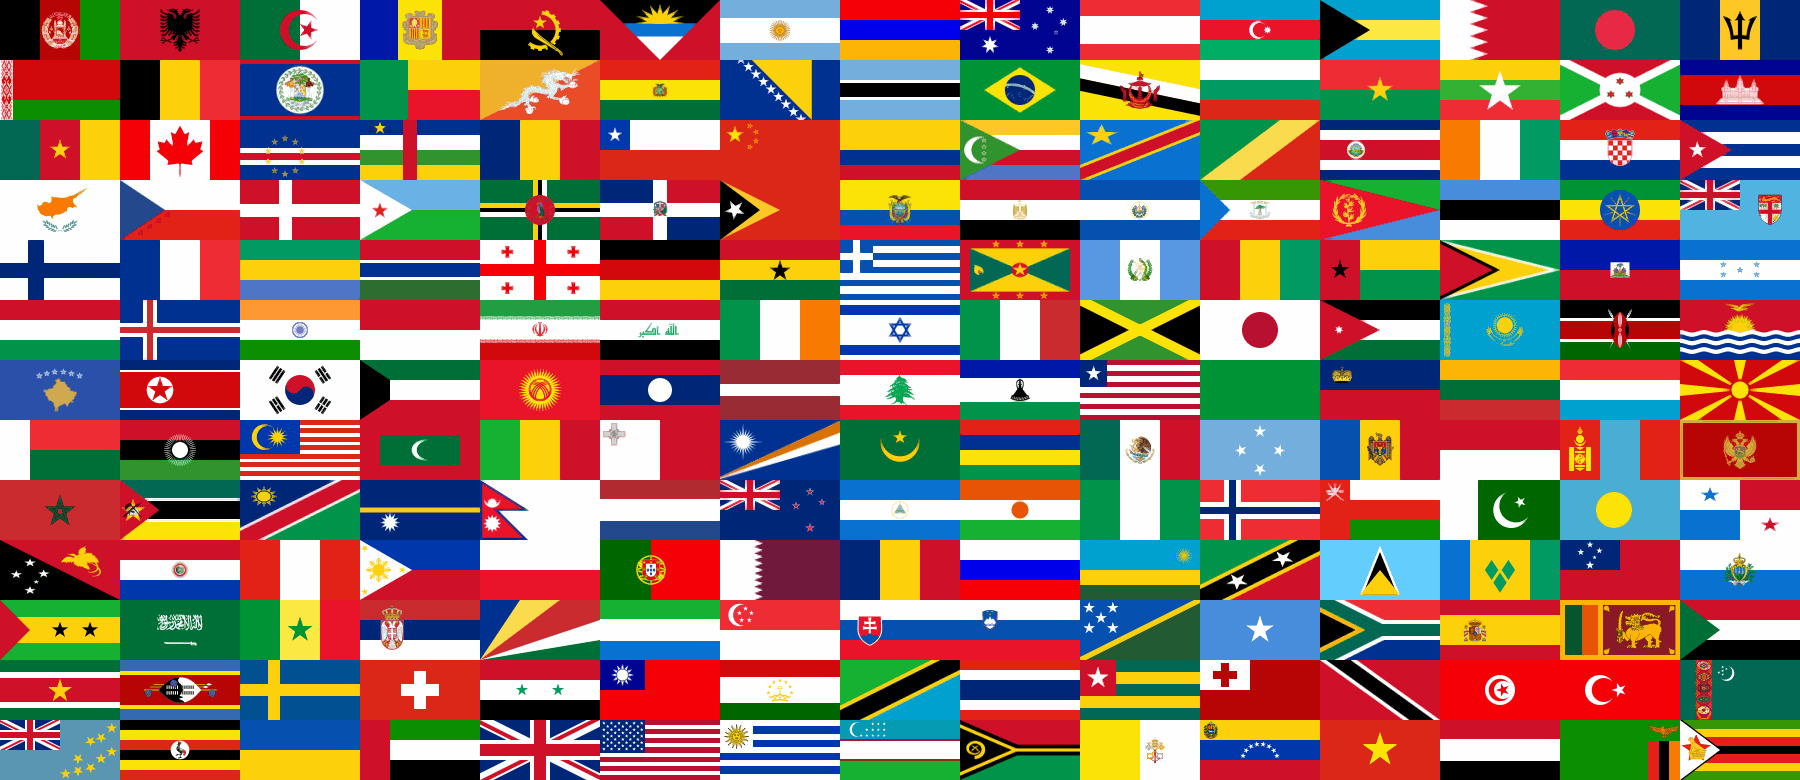 danh sách các nước trên thế giới theo châu lục